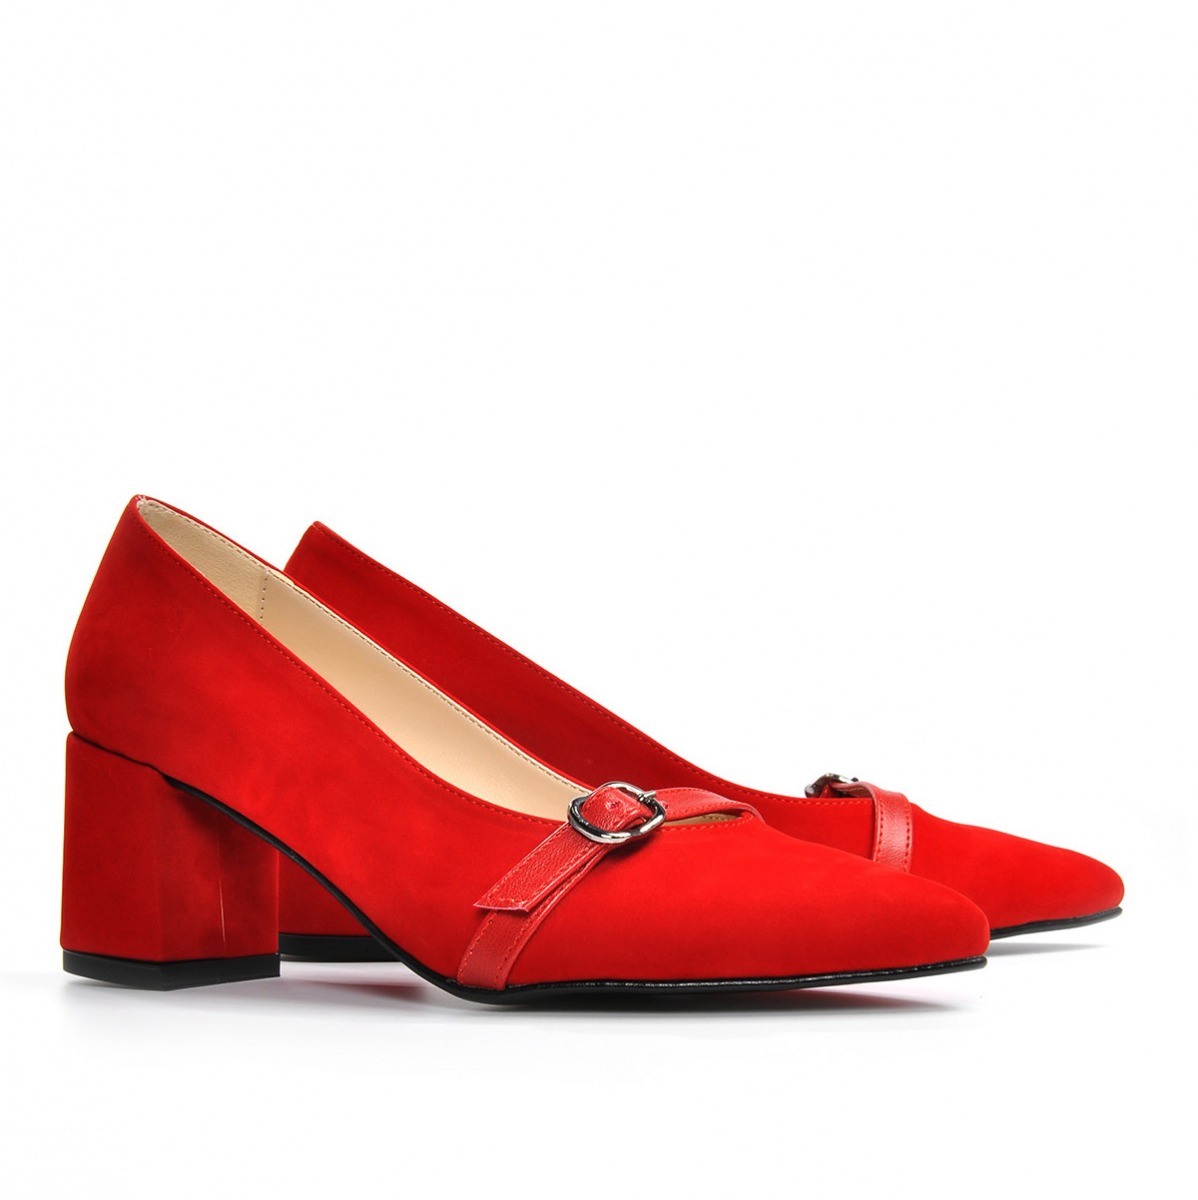 Flo Kadın  Kırmızı-Süet Klasik Topuklu Ayakkabı VZN19-110K. 6